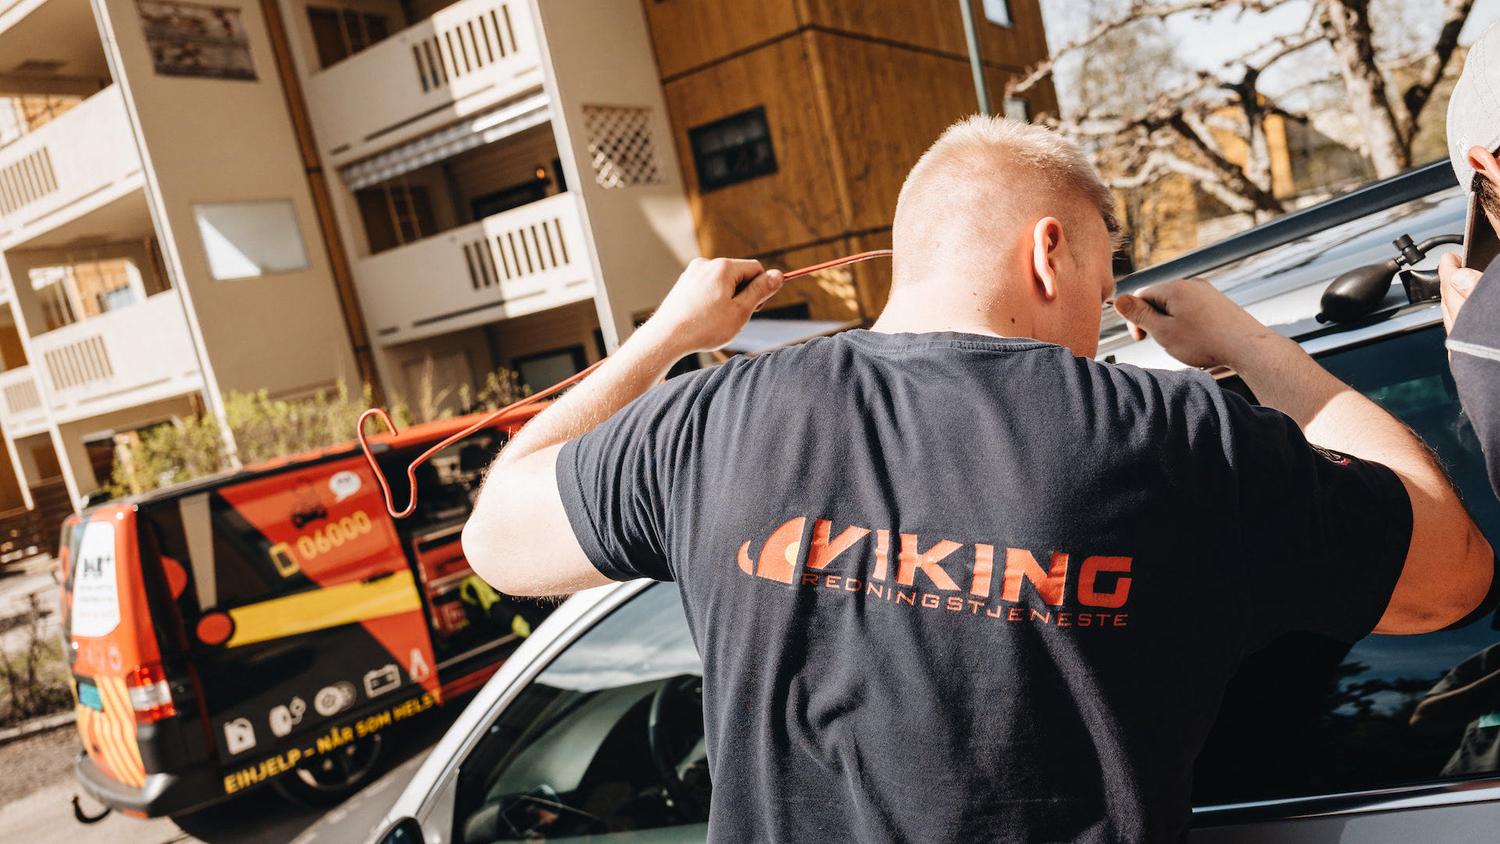 Viking bilberger åpner låst bil.